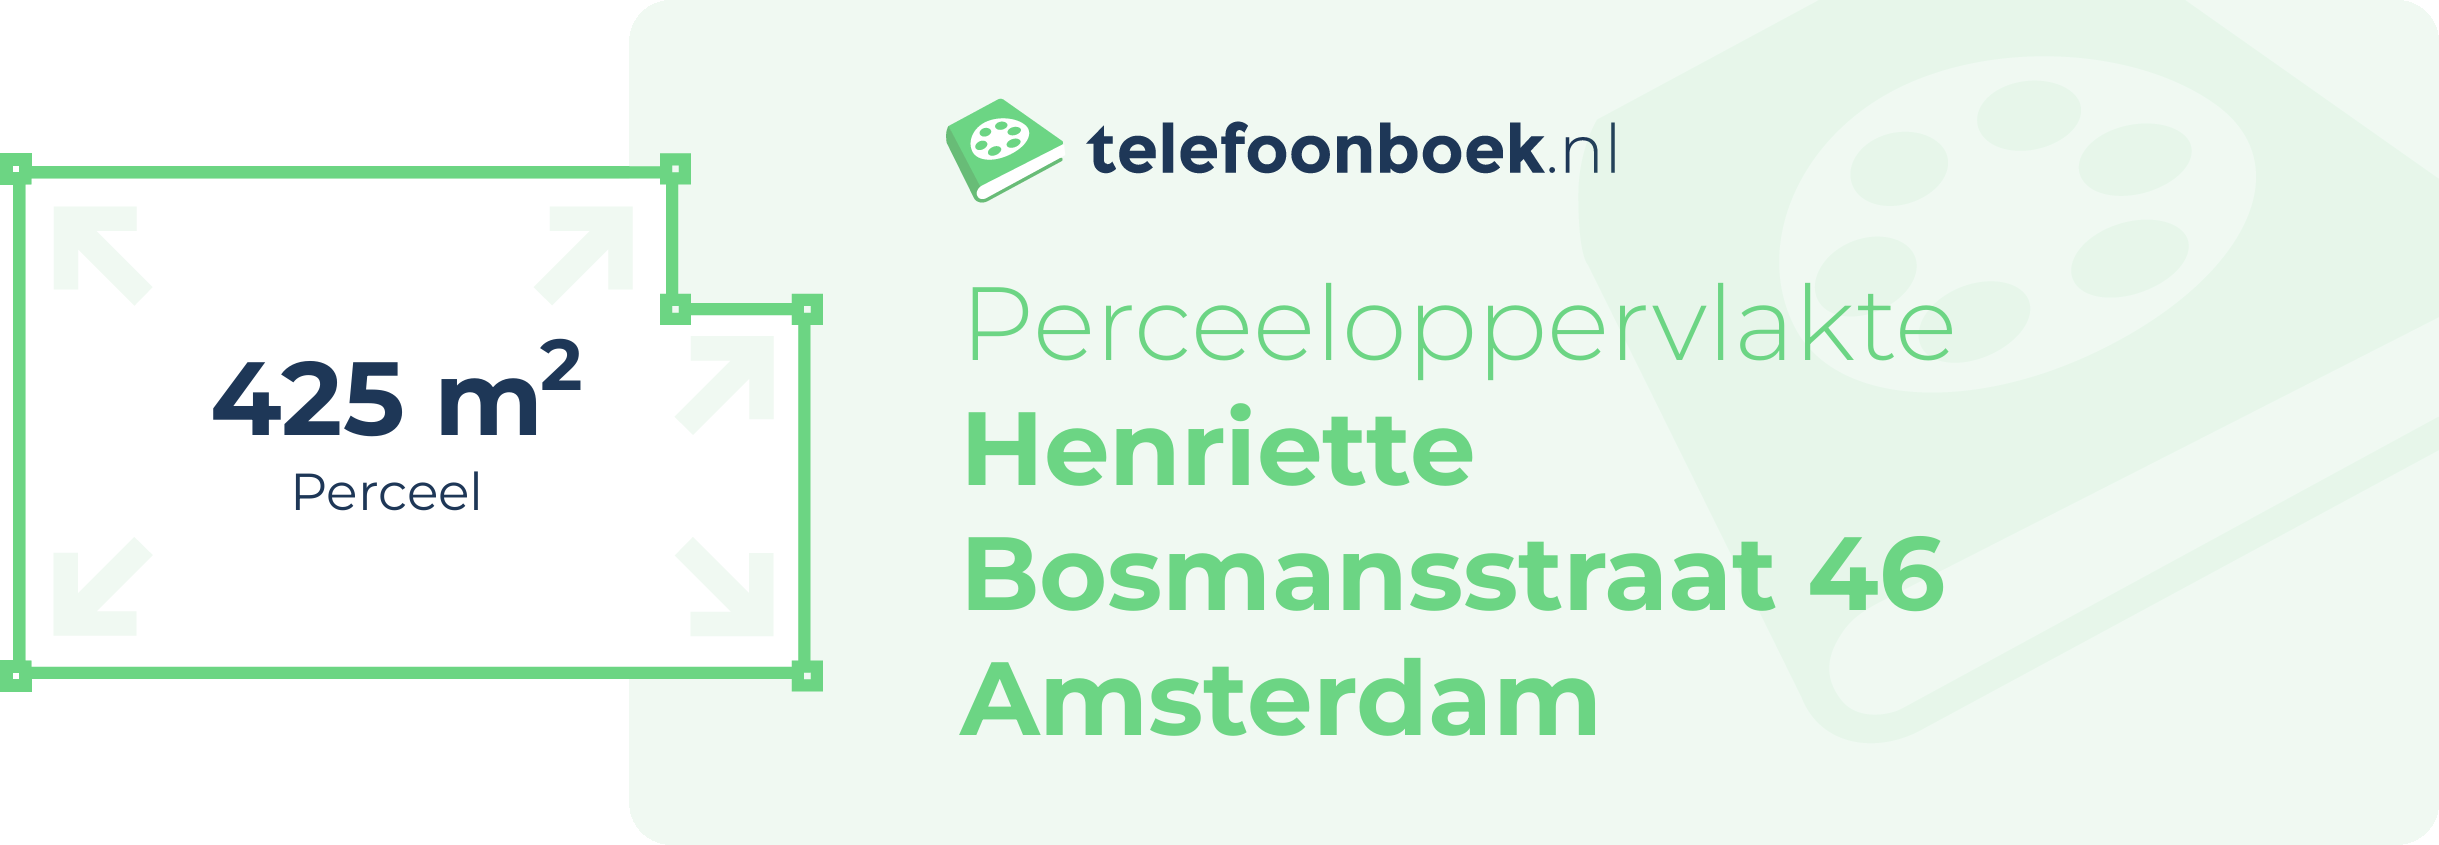 Perceeloppervlakte Henriette Bosmansstraat 46 Amsterdam